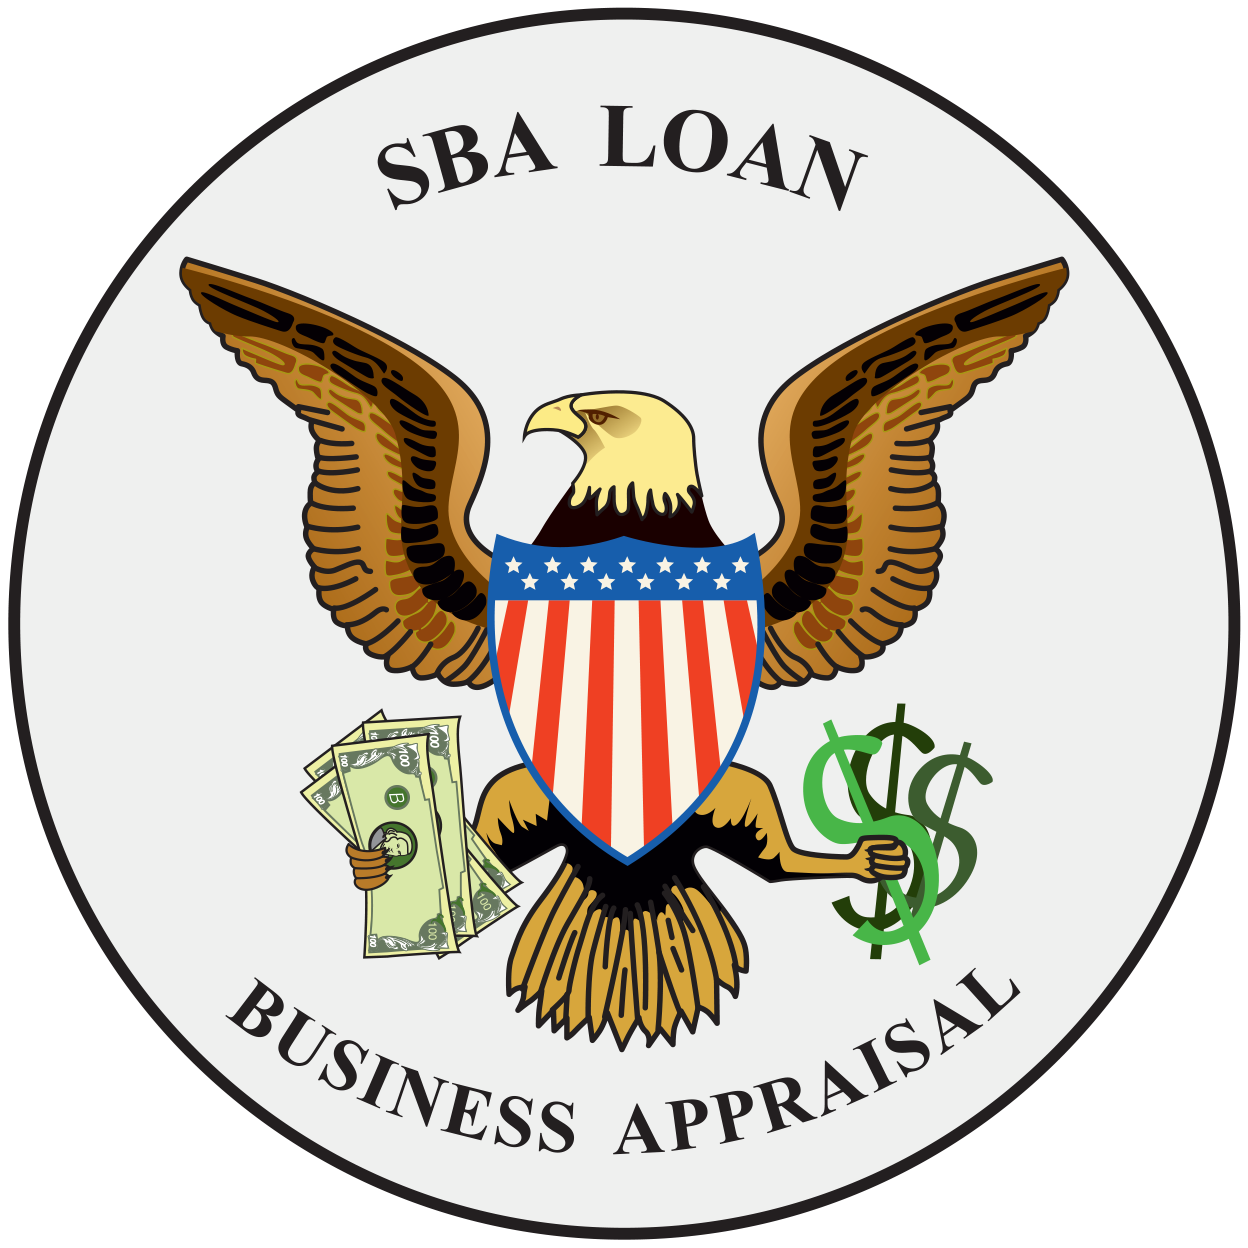 SBA Loan Business Appraisal